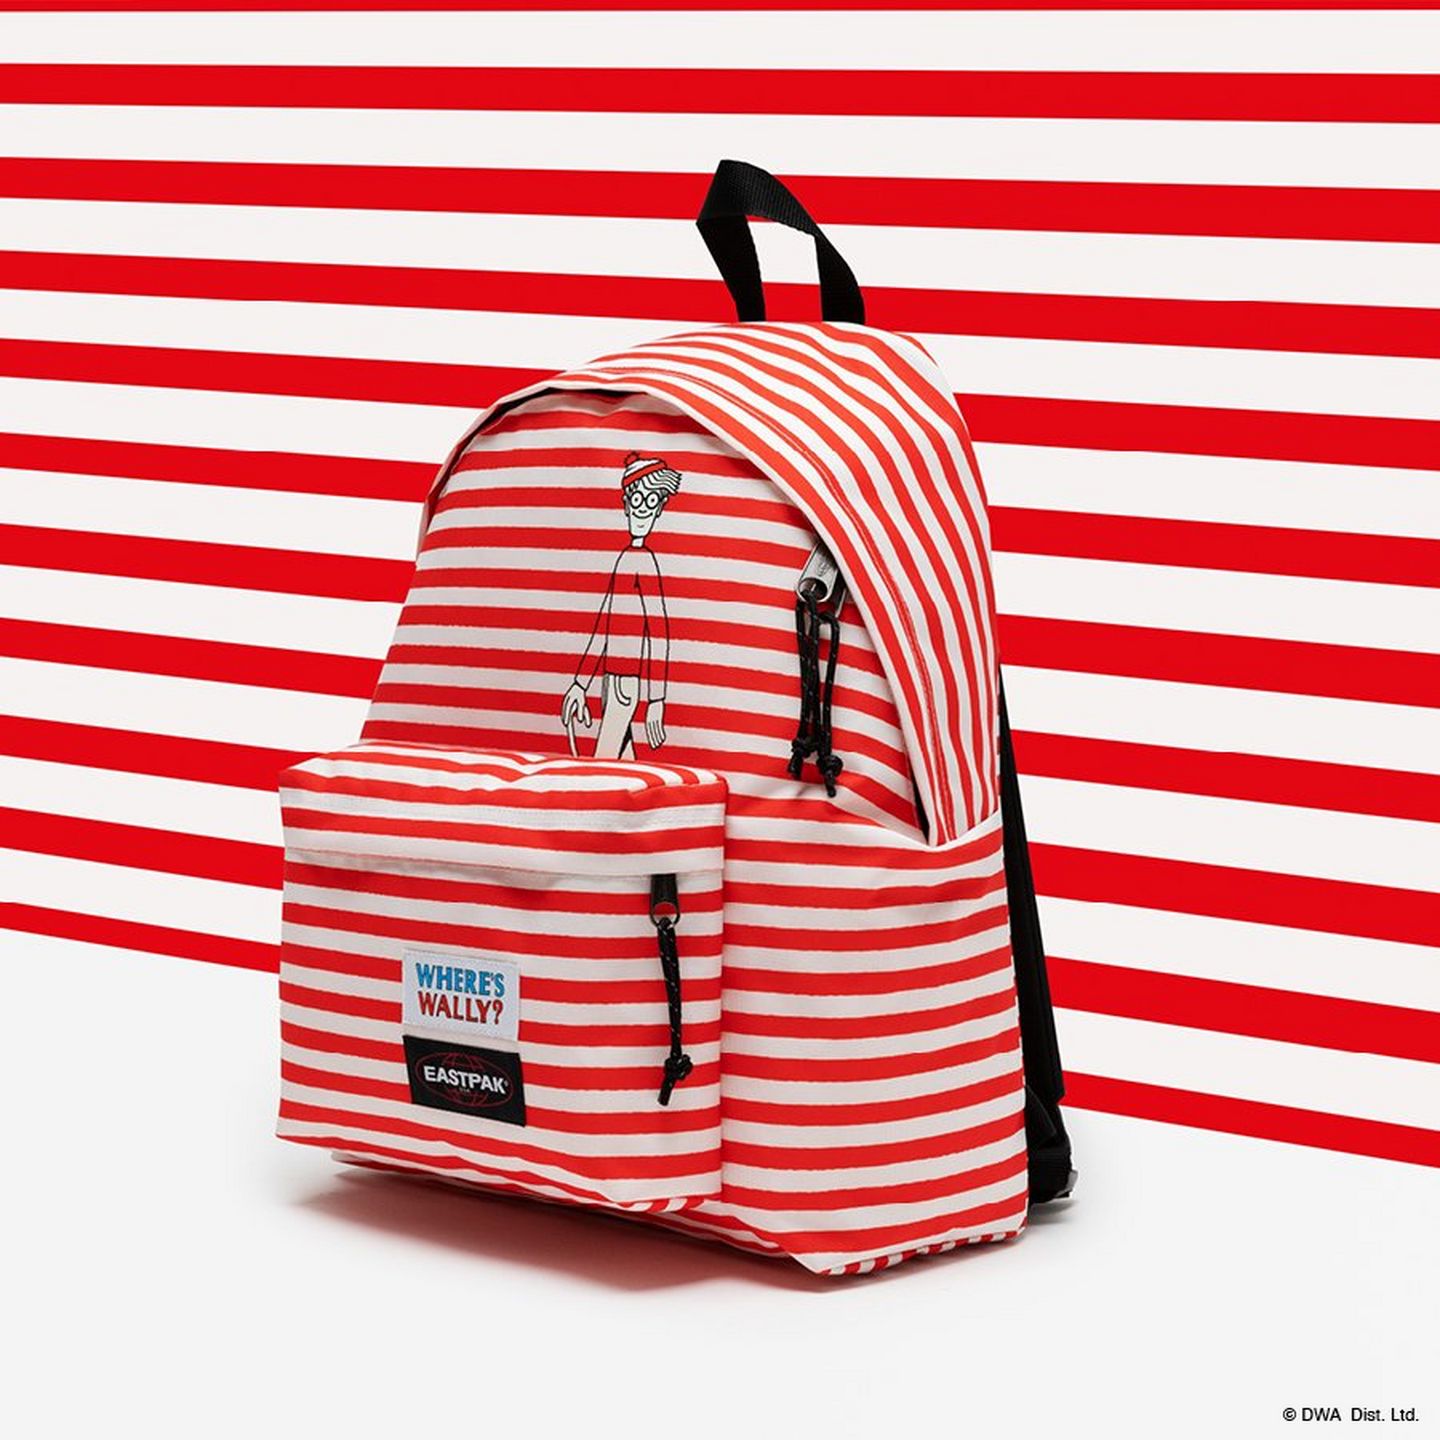 Ce sac à dos Eastpak est parfait pour la rentrée scolaire et est en plus en  promotion - Le Parisien